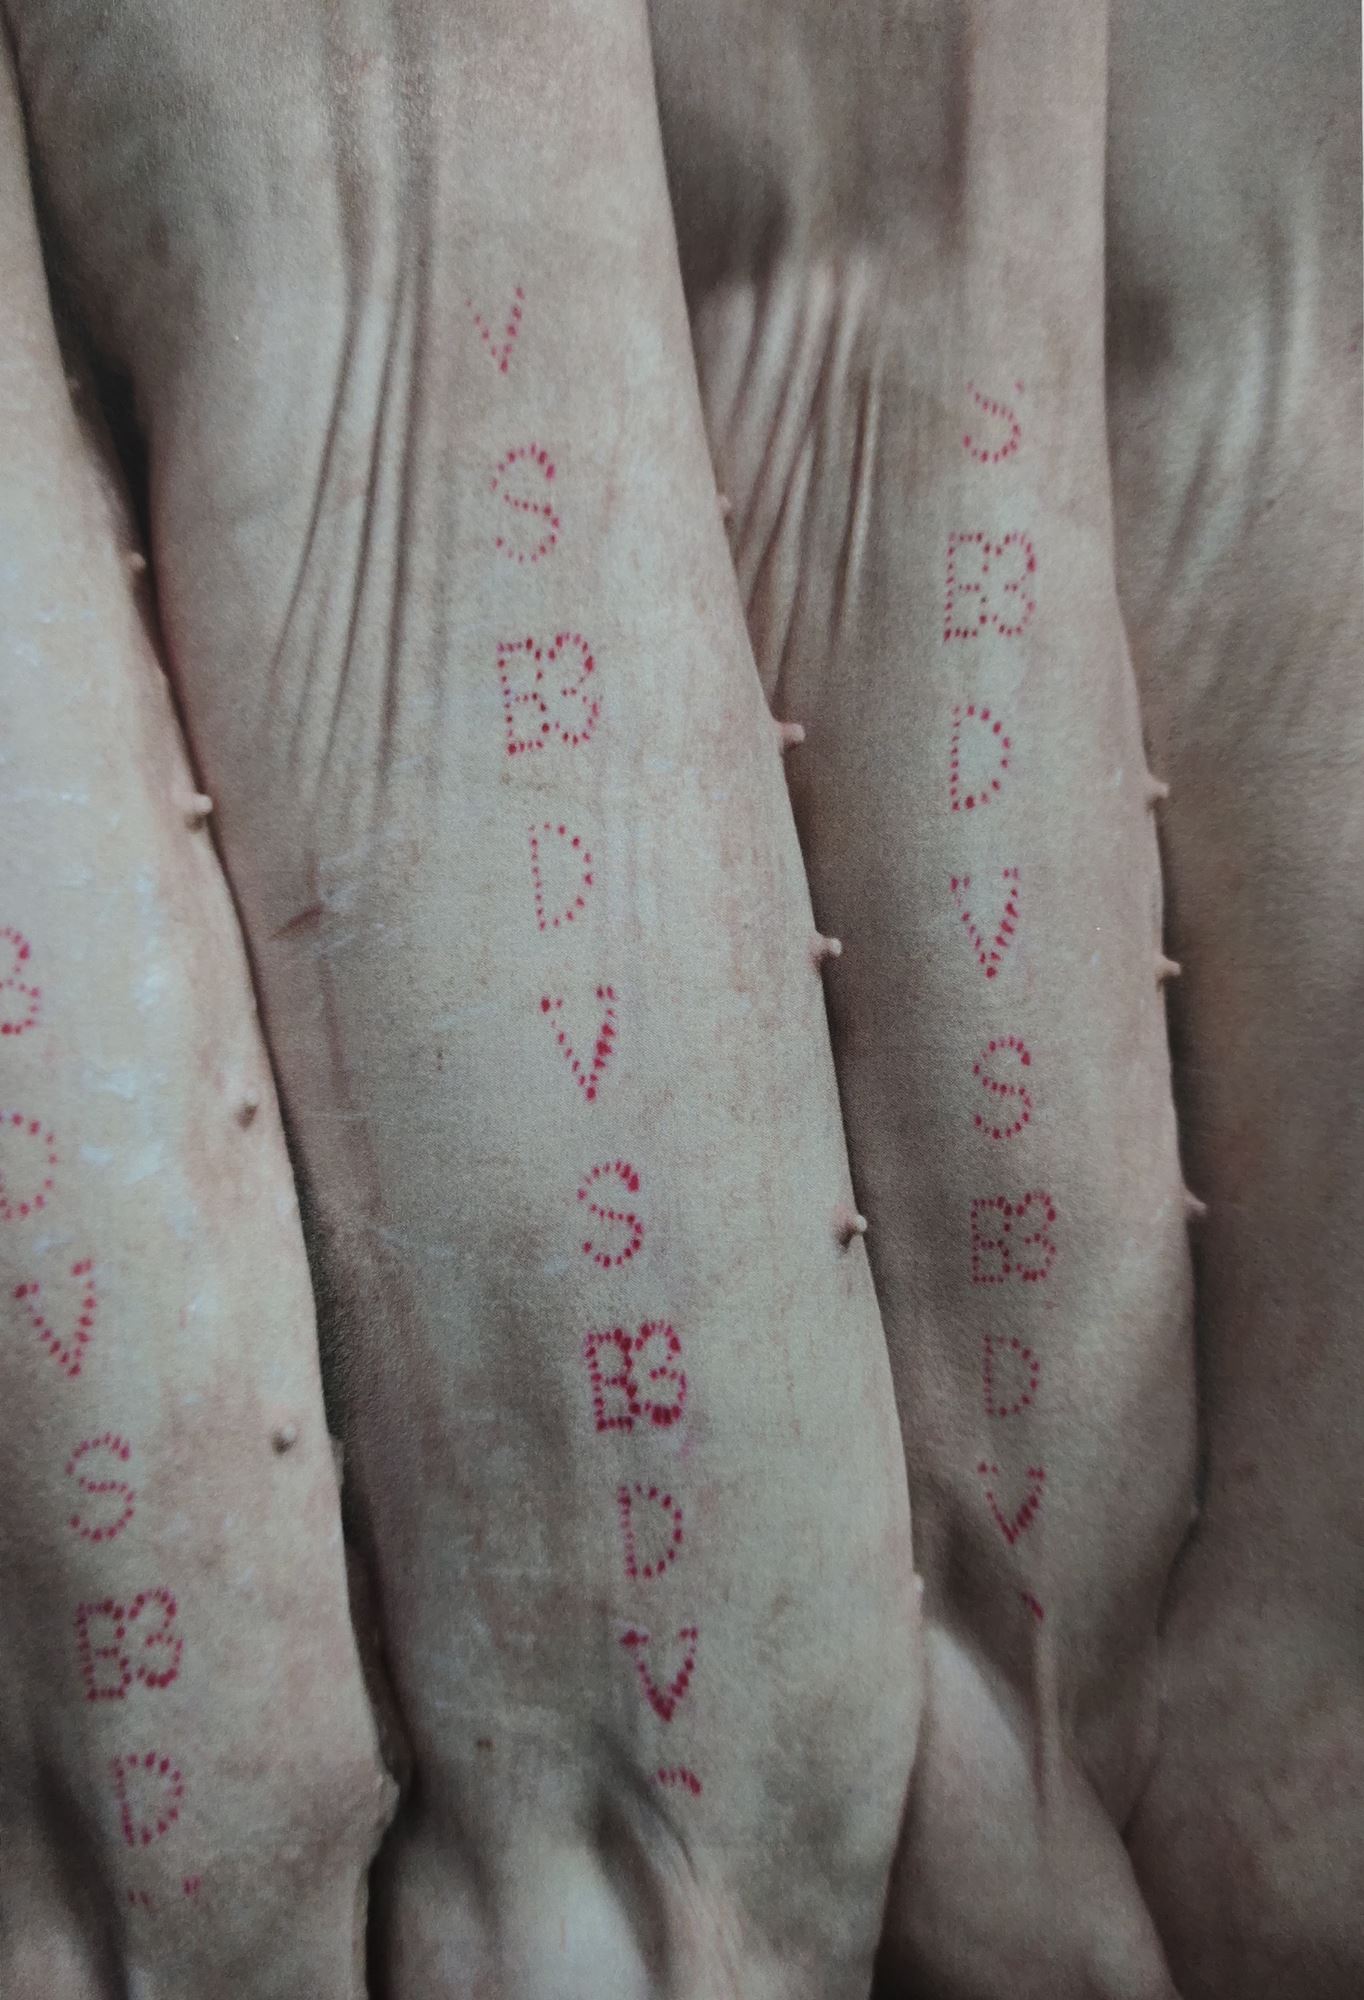 （大北马）槟兽医局查获出自非法宰猪场猪肉，起获431公斤值逾6万令吉猪肉